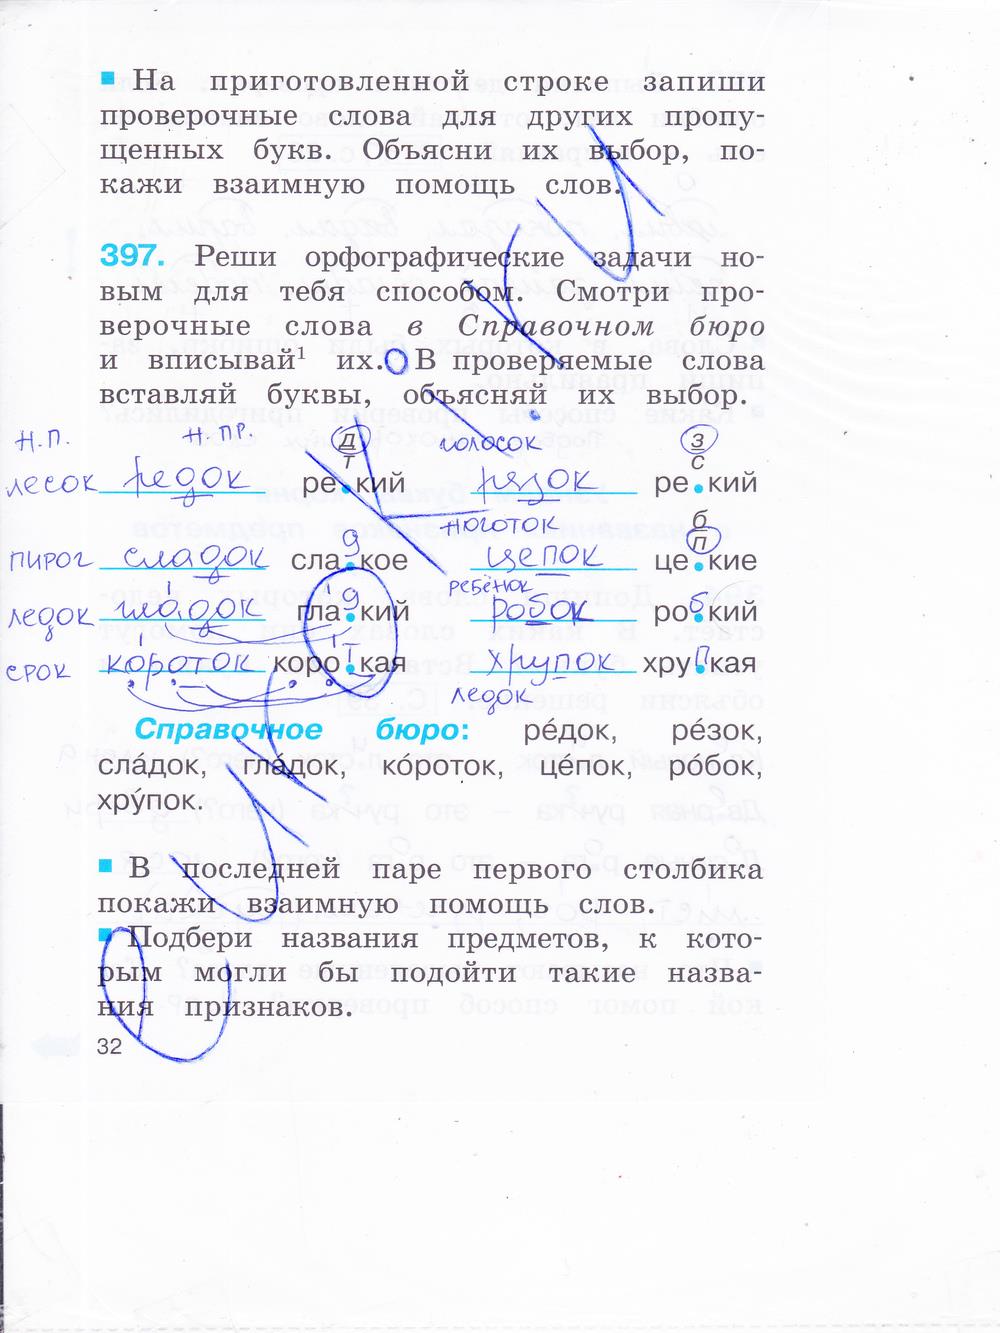 гдз 2 класс рабочая тетрадь часть 2 страница 32 русский язык Соловейчик, Кузьменко